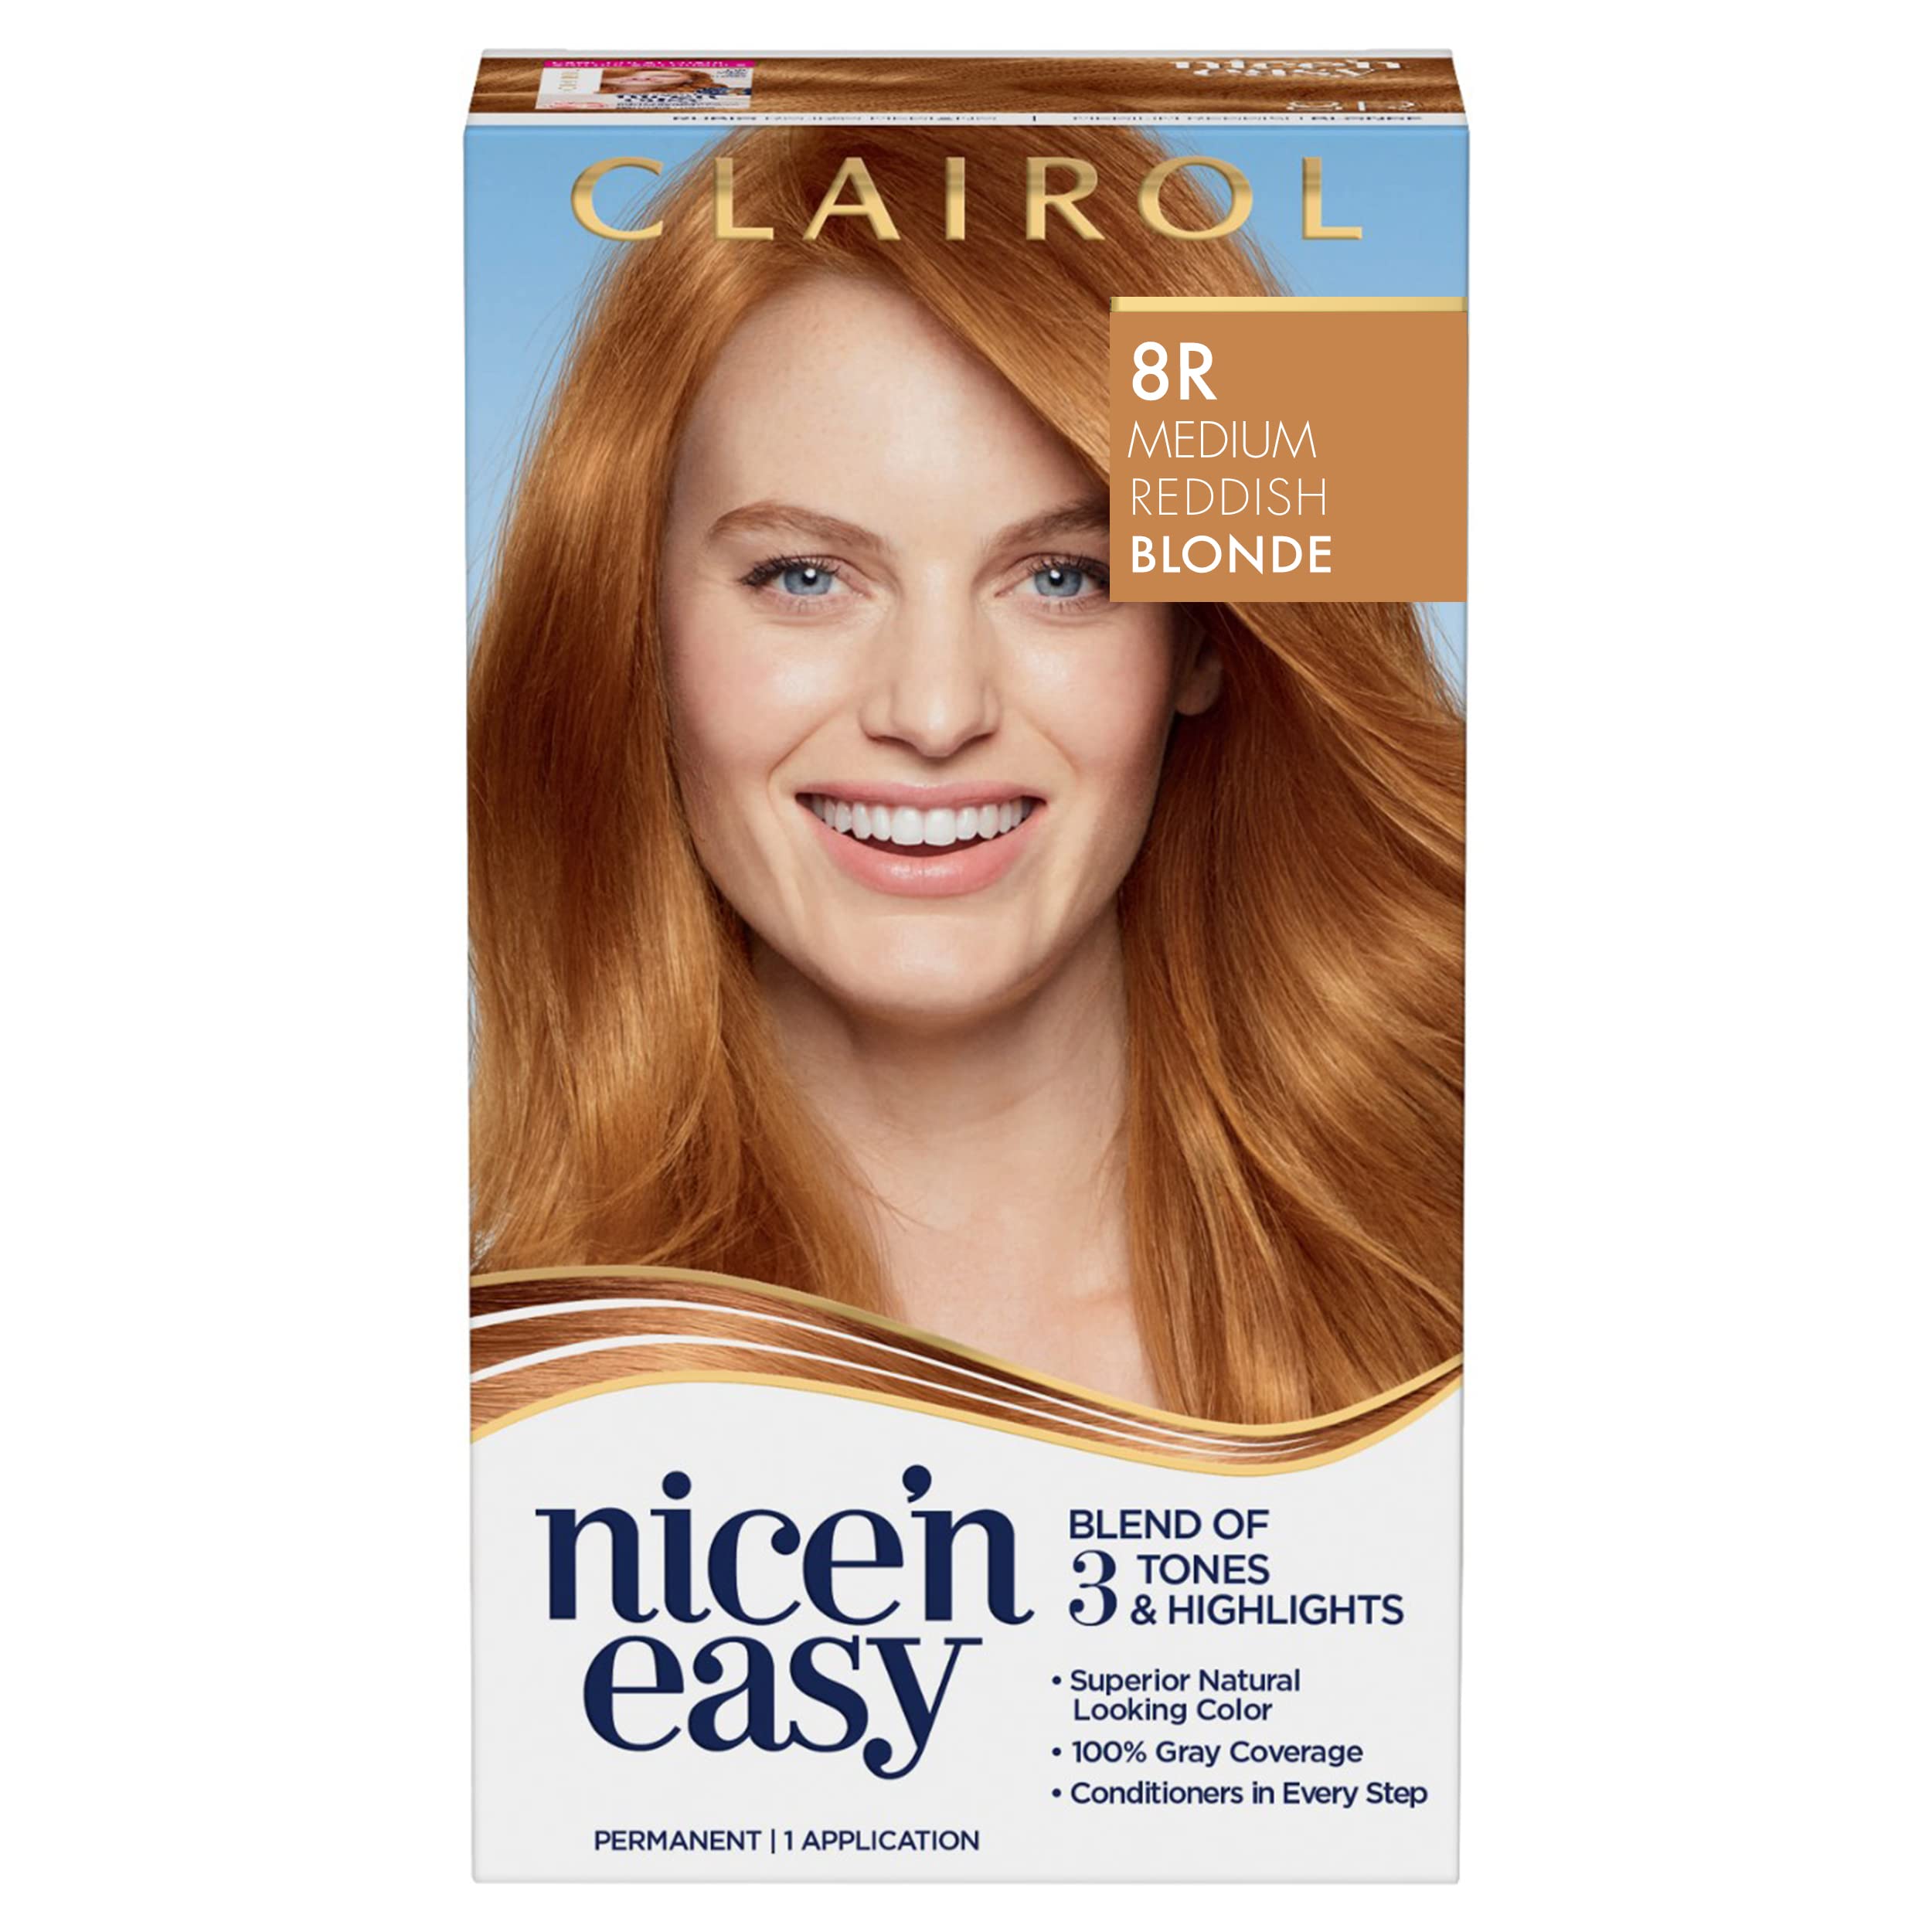 Mua Clairol Nice'n Easy Permanent Hair Dye, 8R Medium Reddish Blonde Hair  Color, Pack of 1 trên Amazon Mỹ chính hãng 2023 | Fado